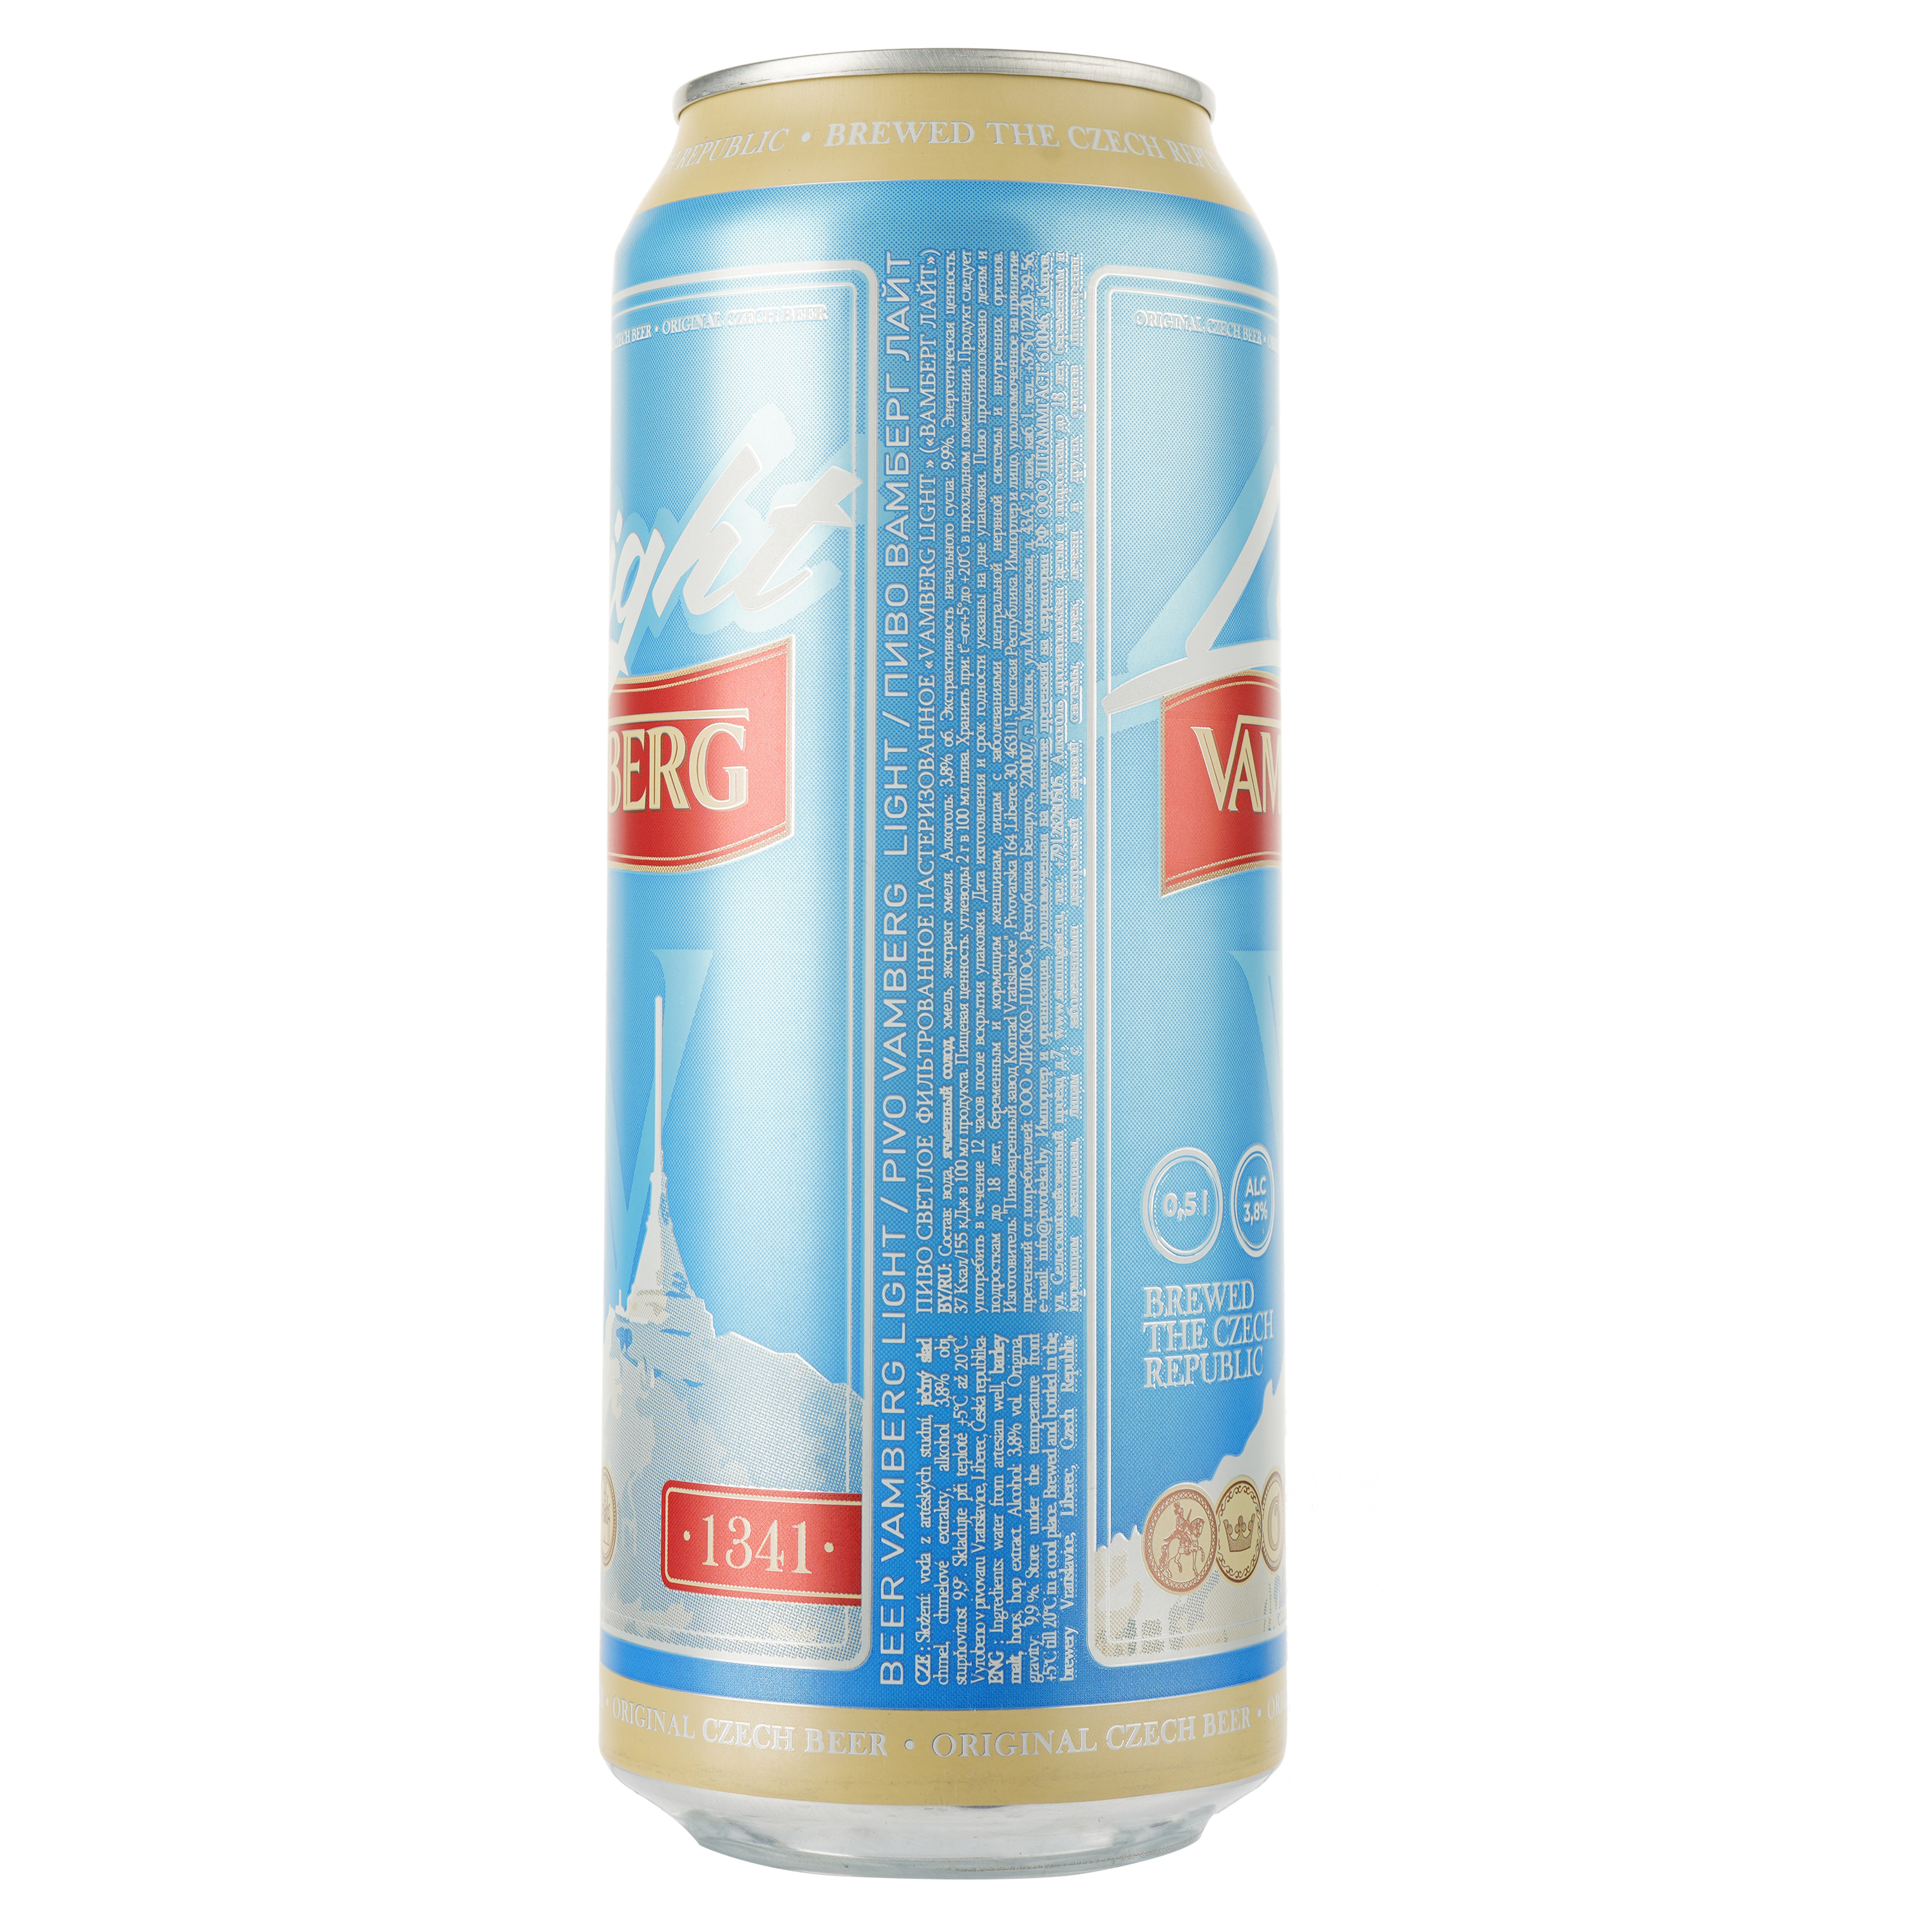 Пиво Vamberg Light светлое, 3.8%, ж/б, 0.5 л - фото 2